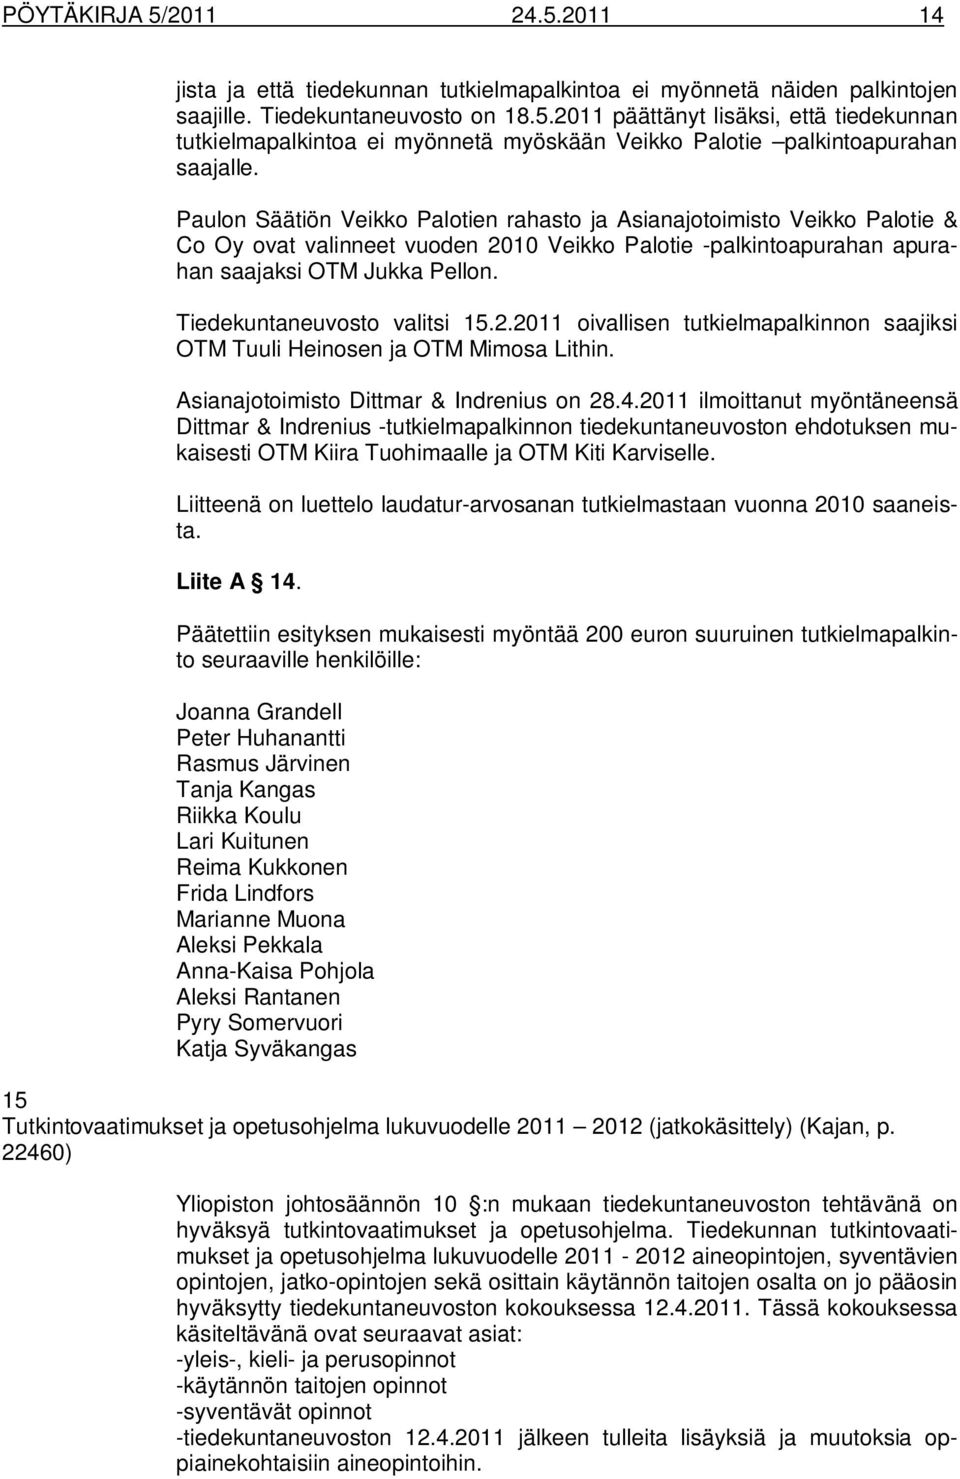 Tiedekuntaneuvosto valitsi 15.2.2011 oivallisen tutkielmapalkinnon saajiksi OTM Tuuli Heinosen ja OTM Mimosa Lithin. Asianajotoimisto Dittmar & Indrenius on 28.4.